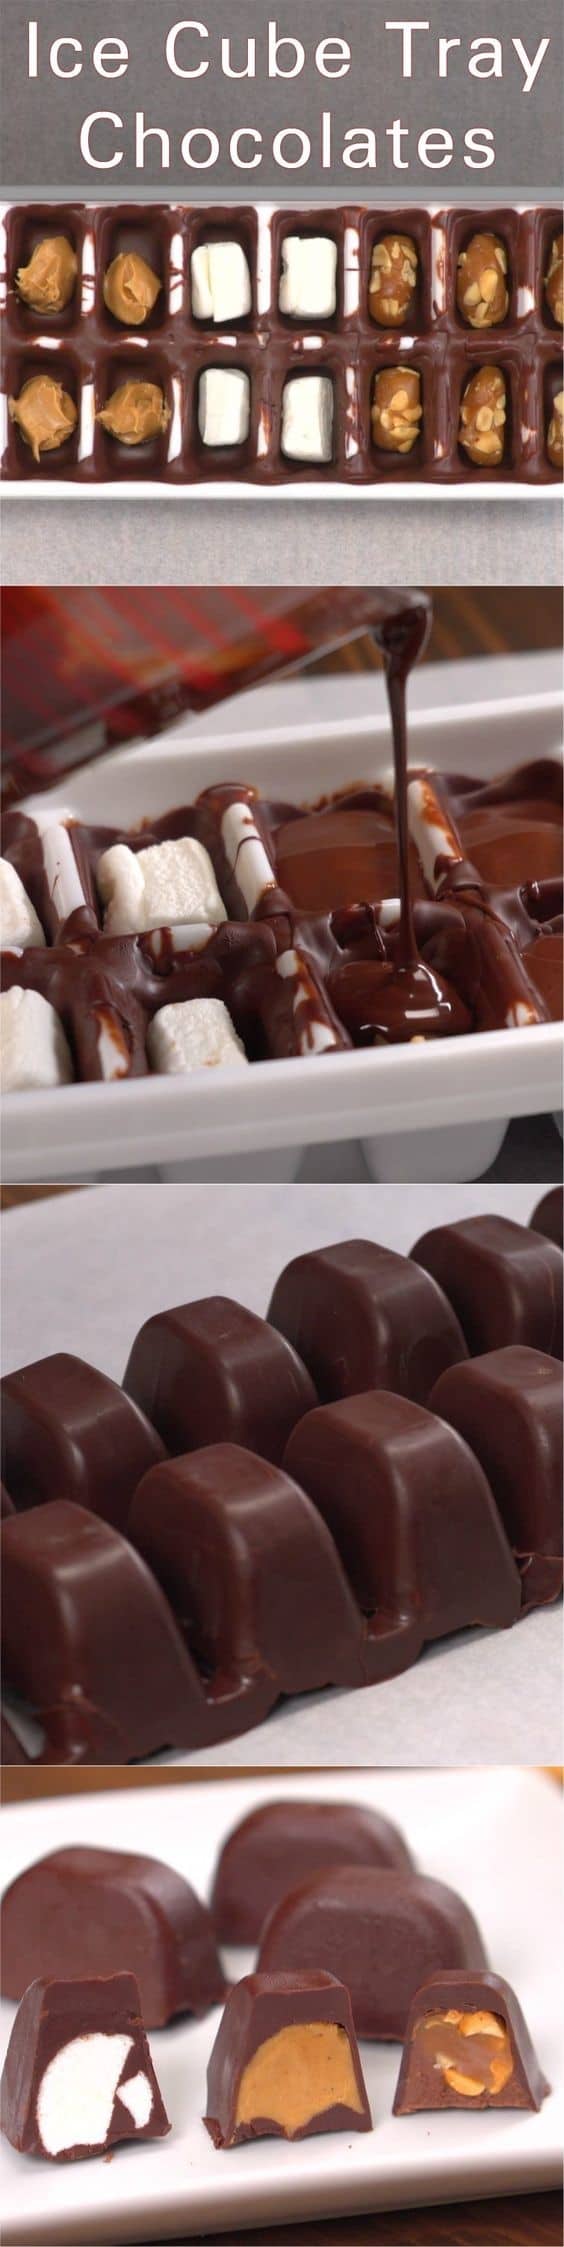 ice-cube-tray-chocolates